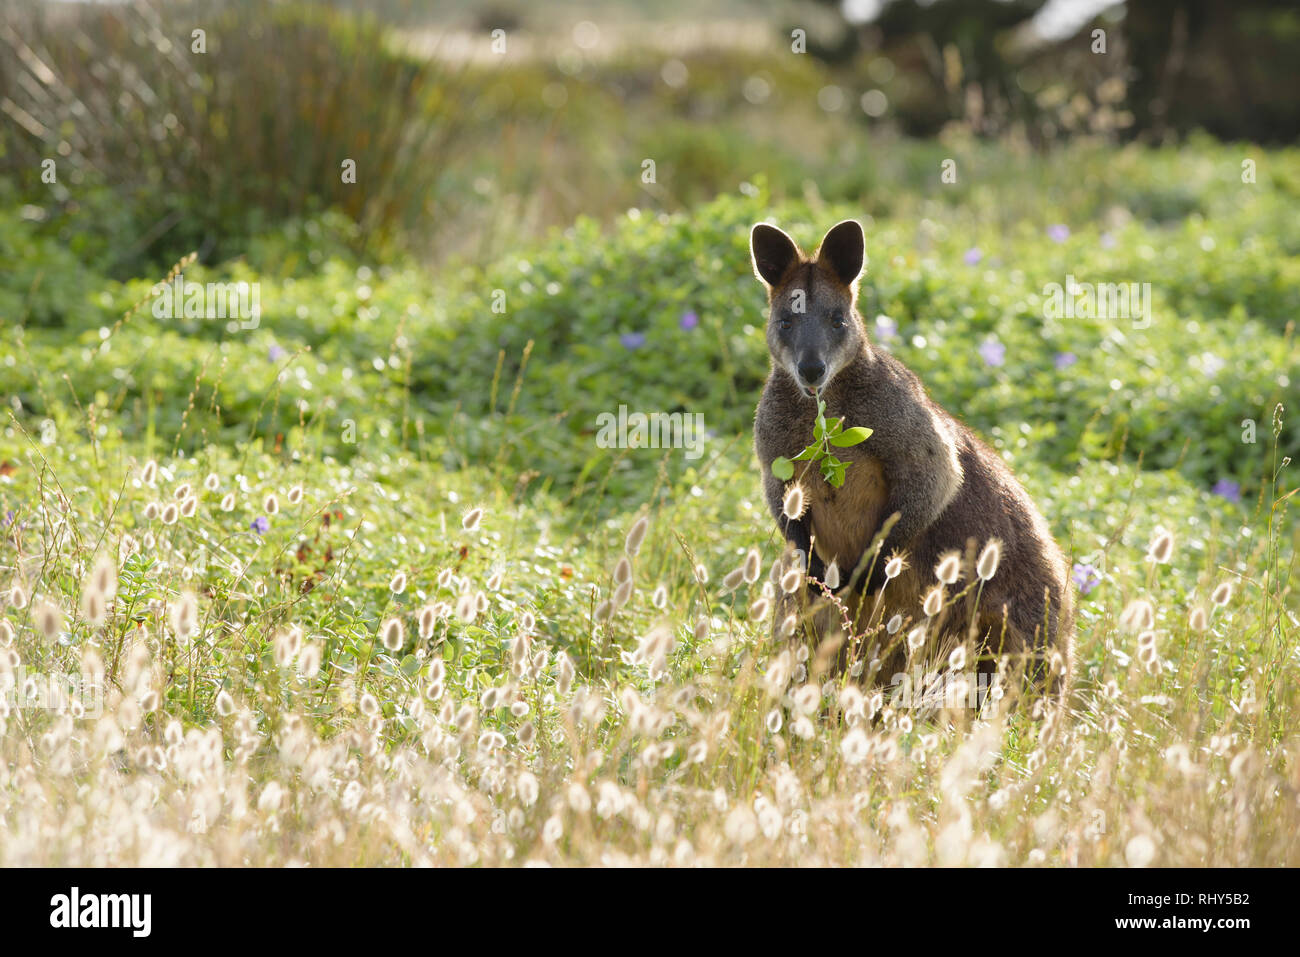 Wallaby, Wallabia bicolor, se nourrir de la végétation dans la zone côtière au cours de la fin de l'après-midi, Port Fairy, Victoria Australie Banque D'Images